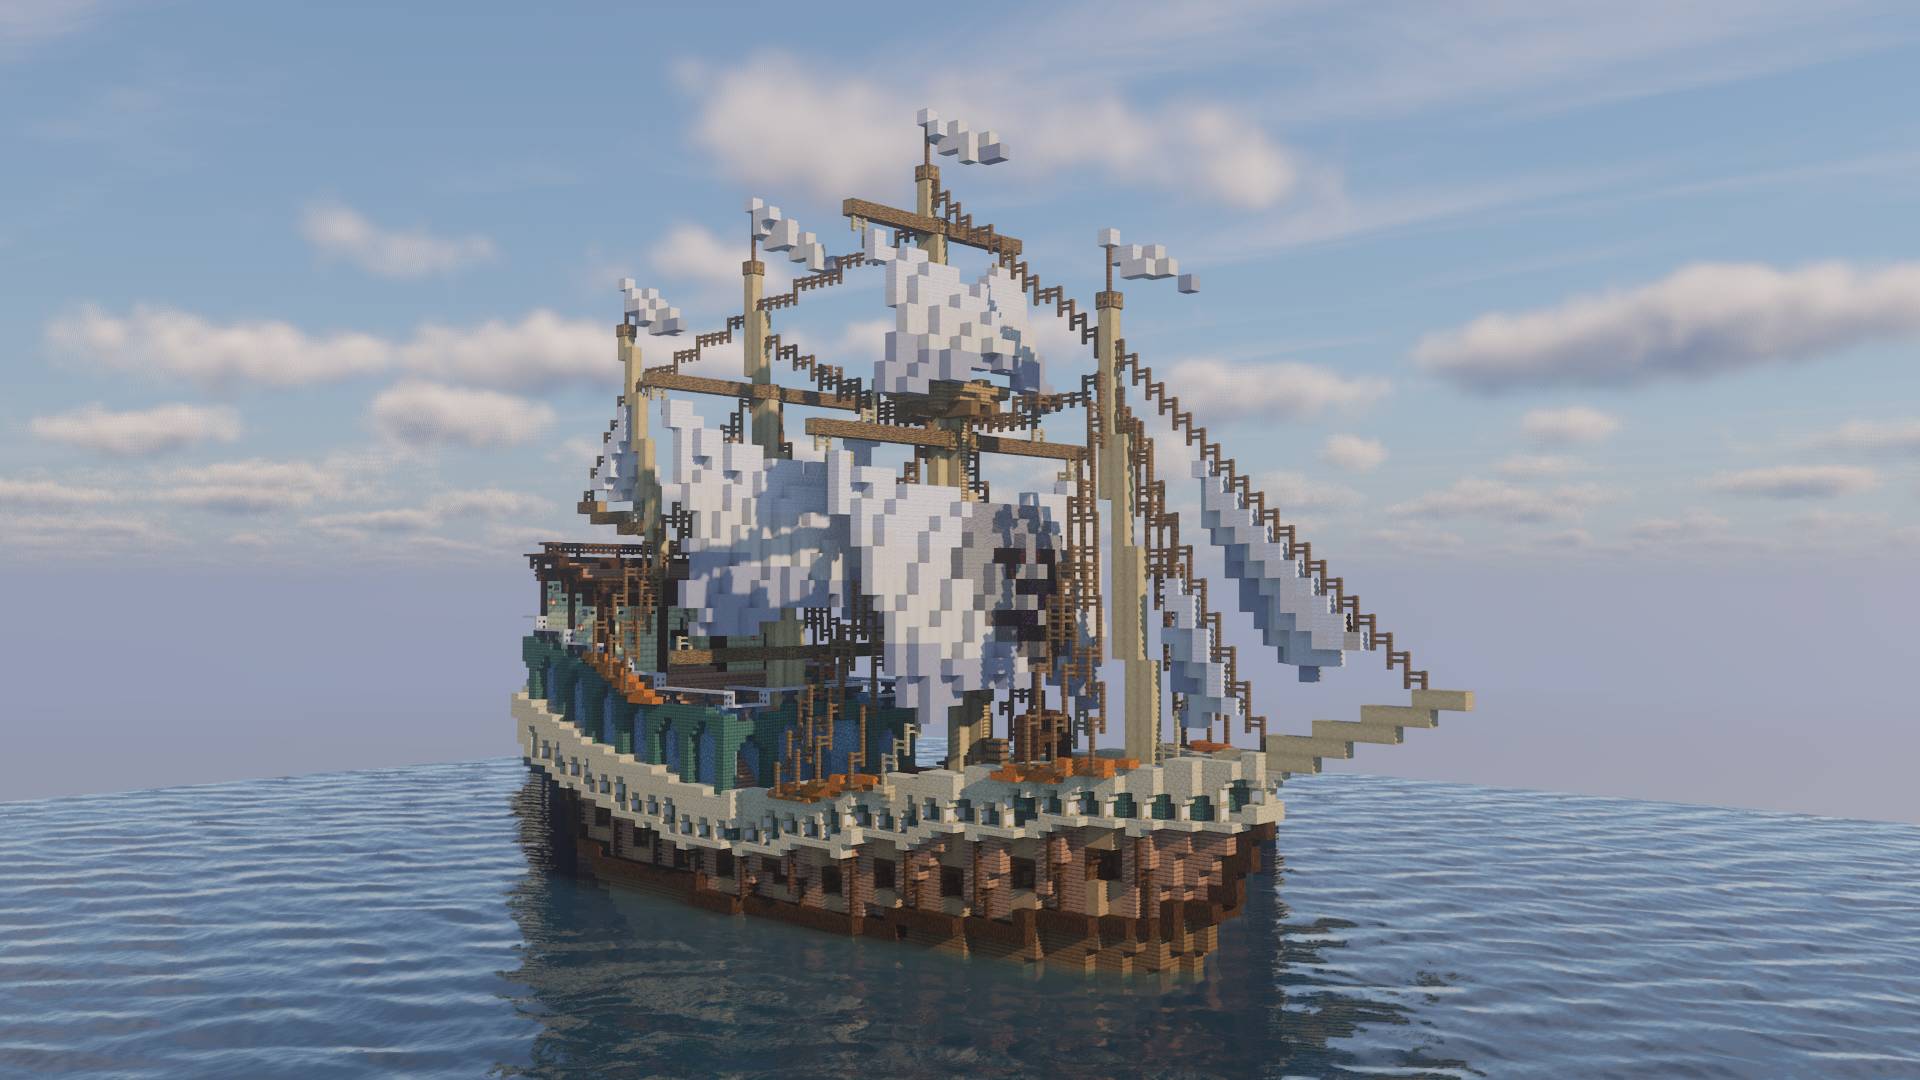 Pirate Hijacked Spanish Galleon